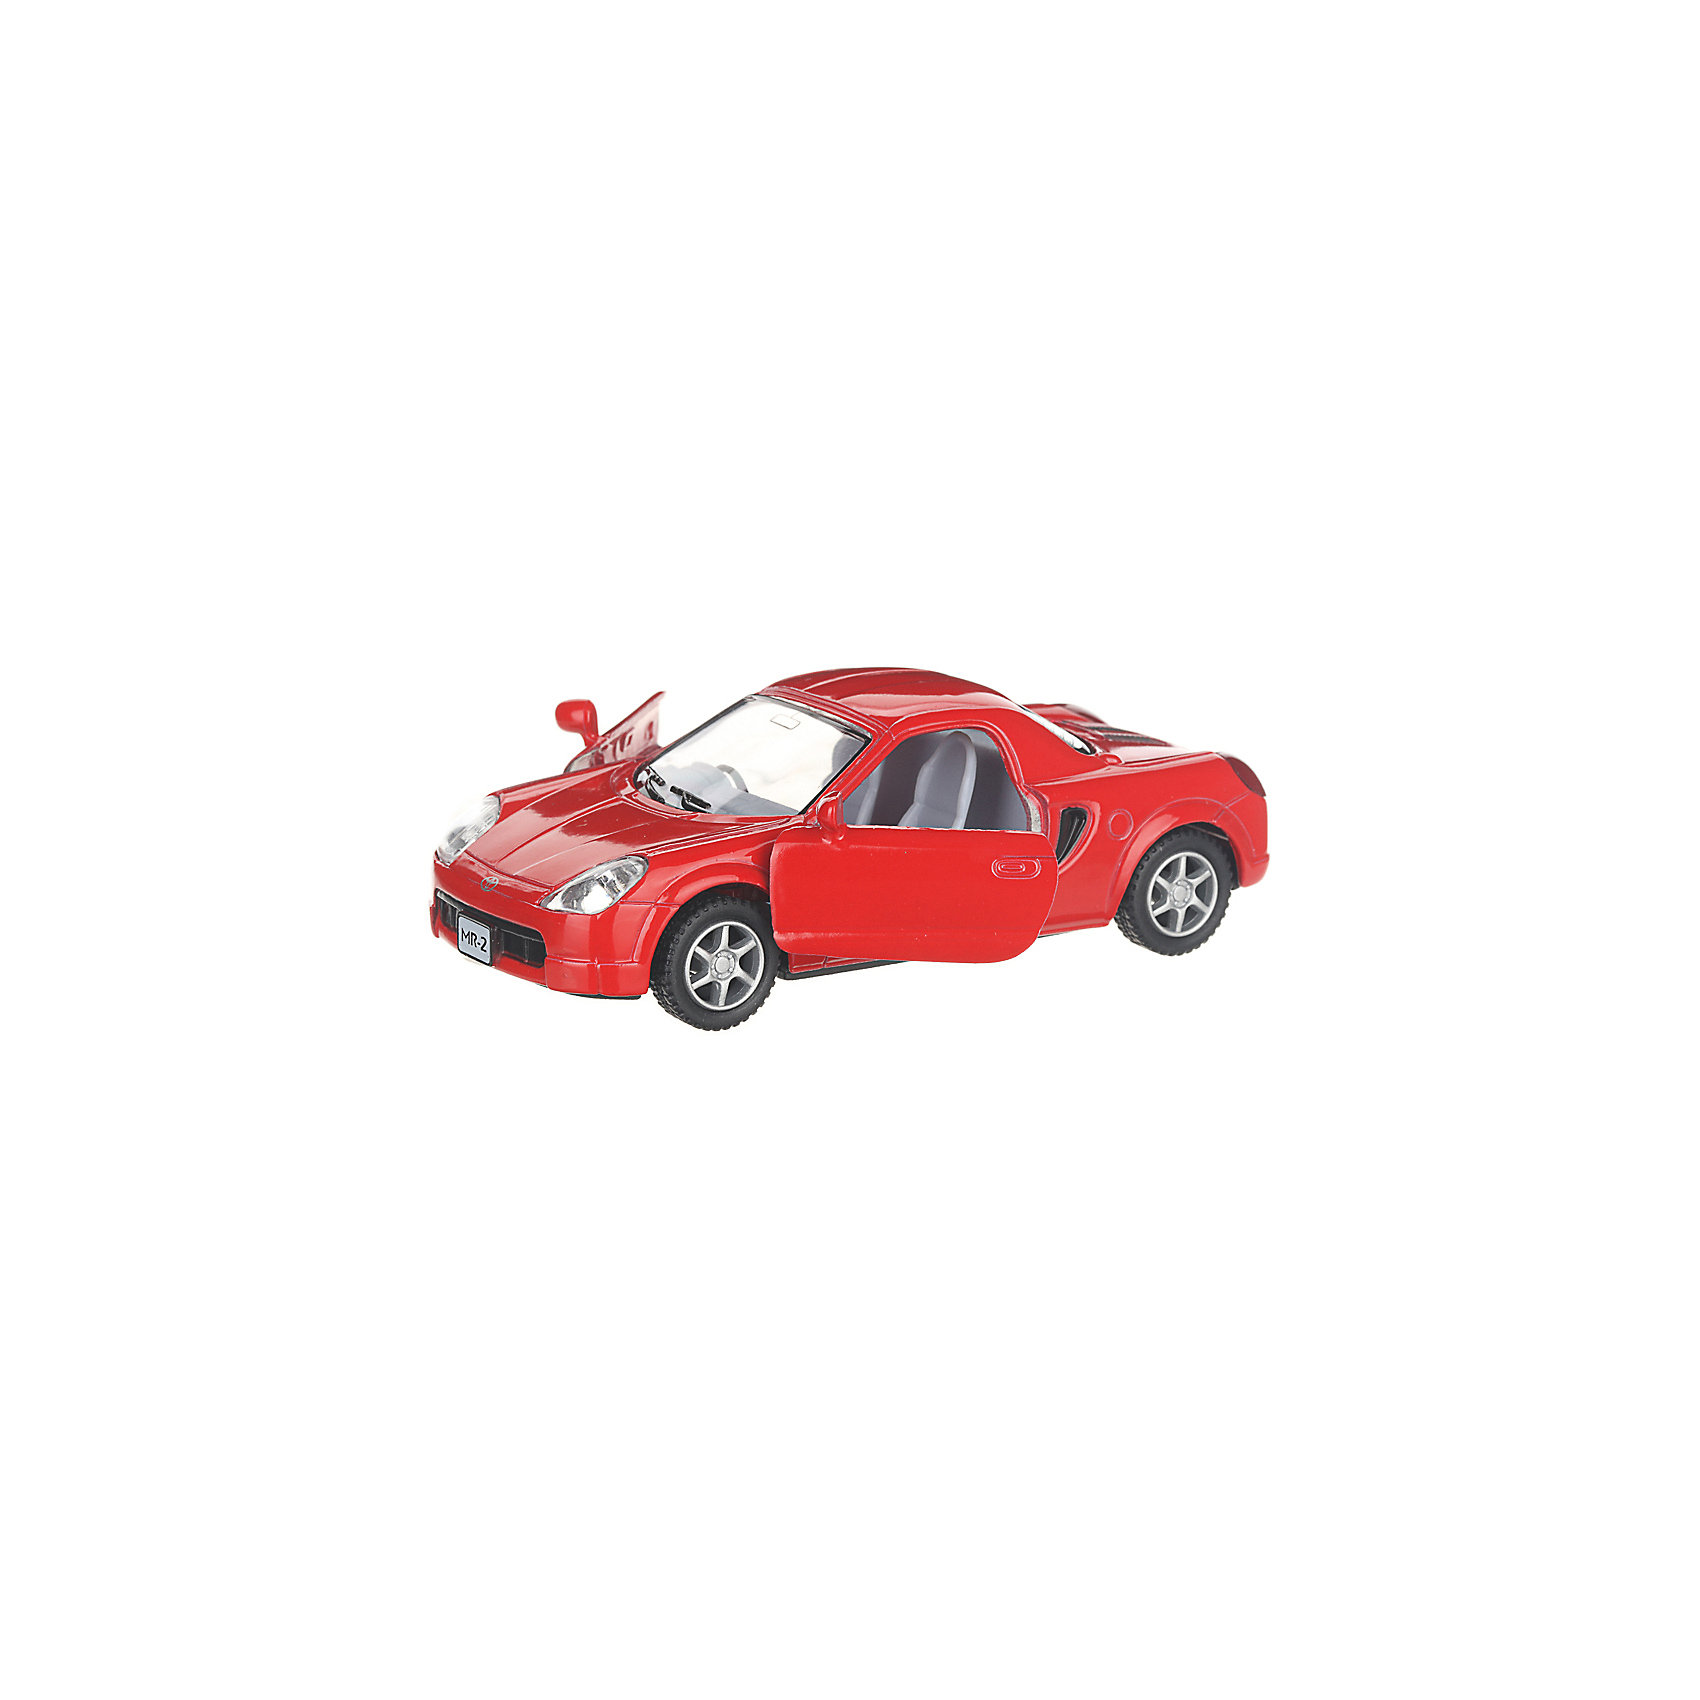 Коллекционная машинка Toyota MR2, красная Serinity Toys 13233469